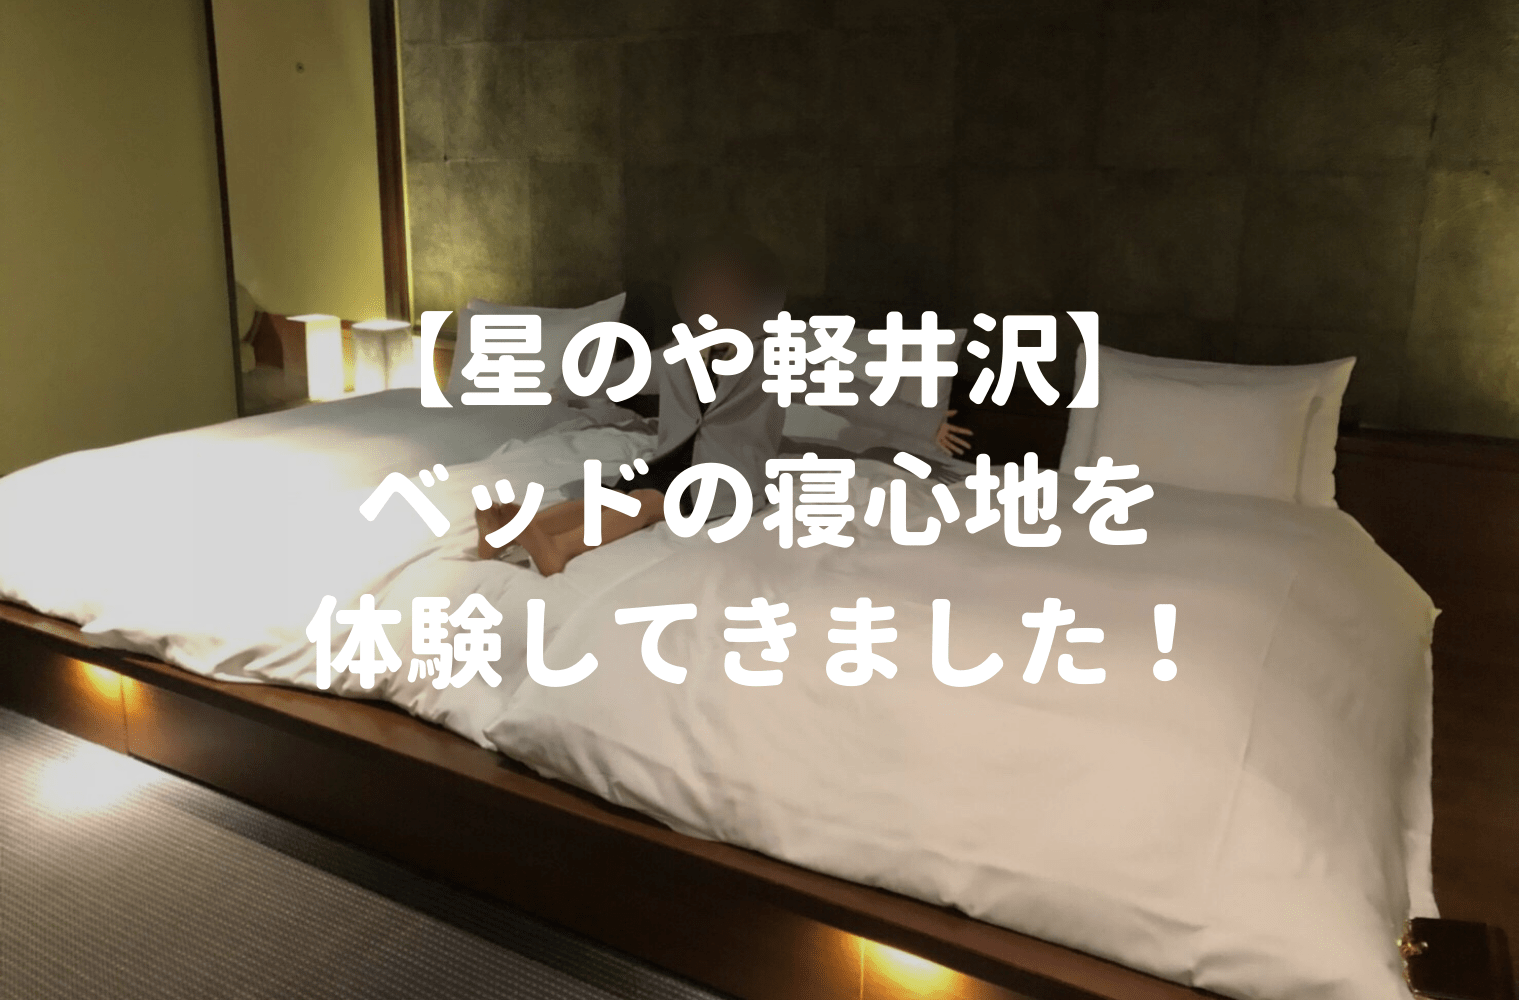 星野リゾート運営 星のや軽井沢 のベッドマットレスを体験 鈴木家のマットレス